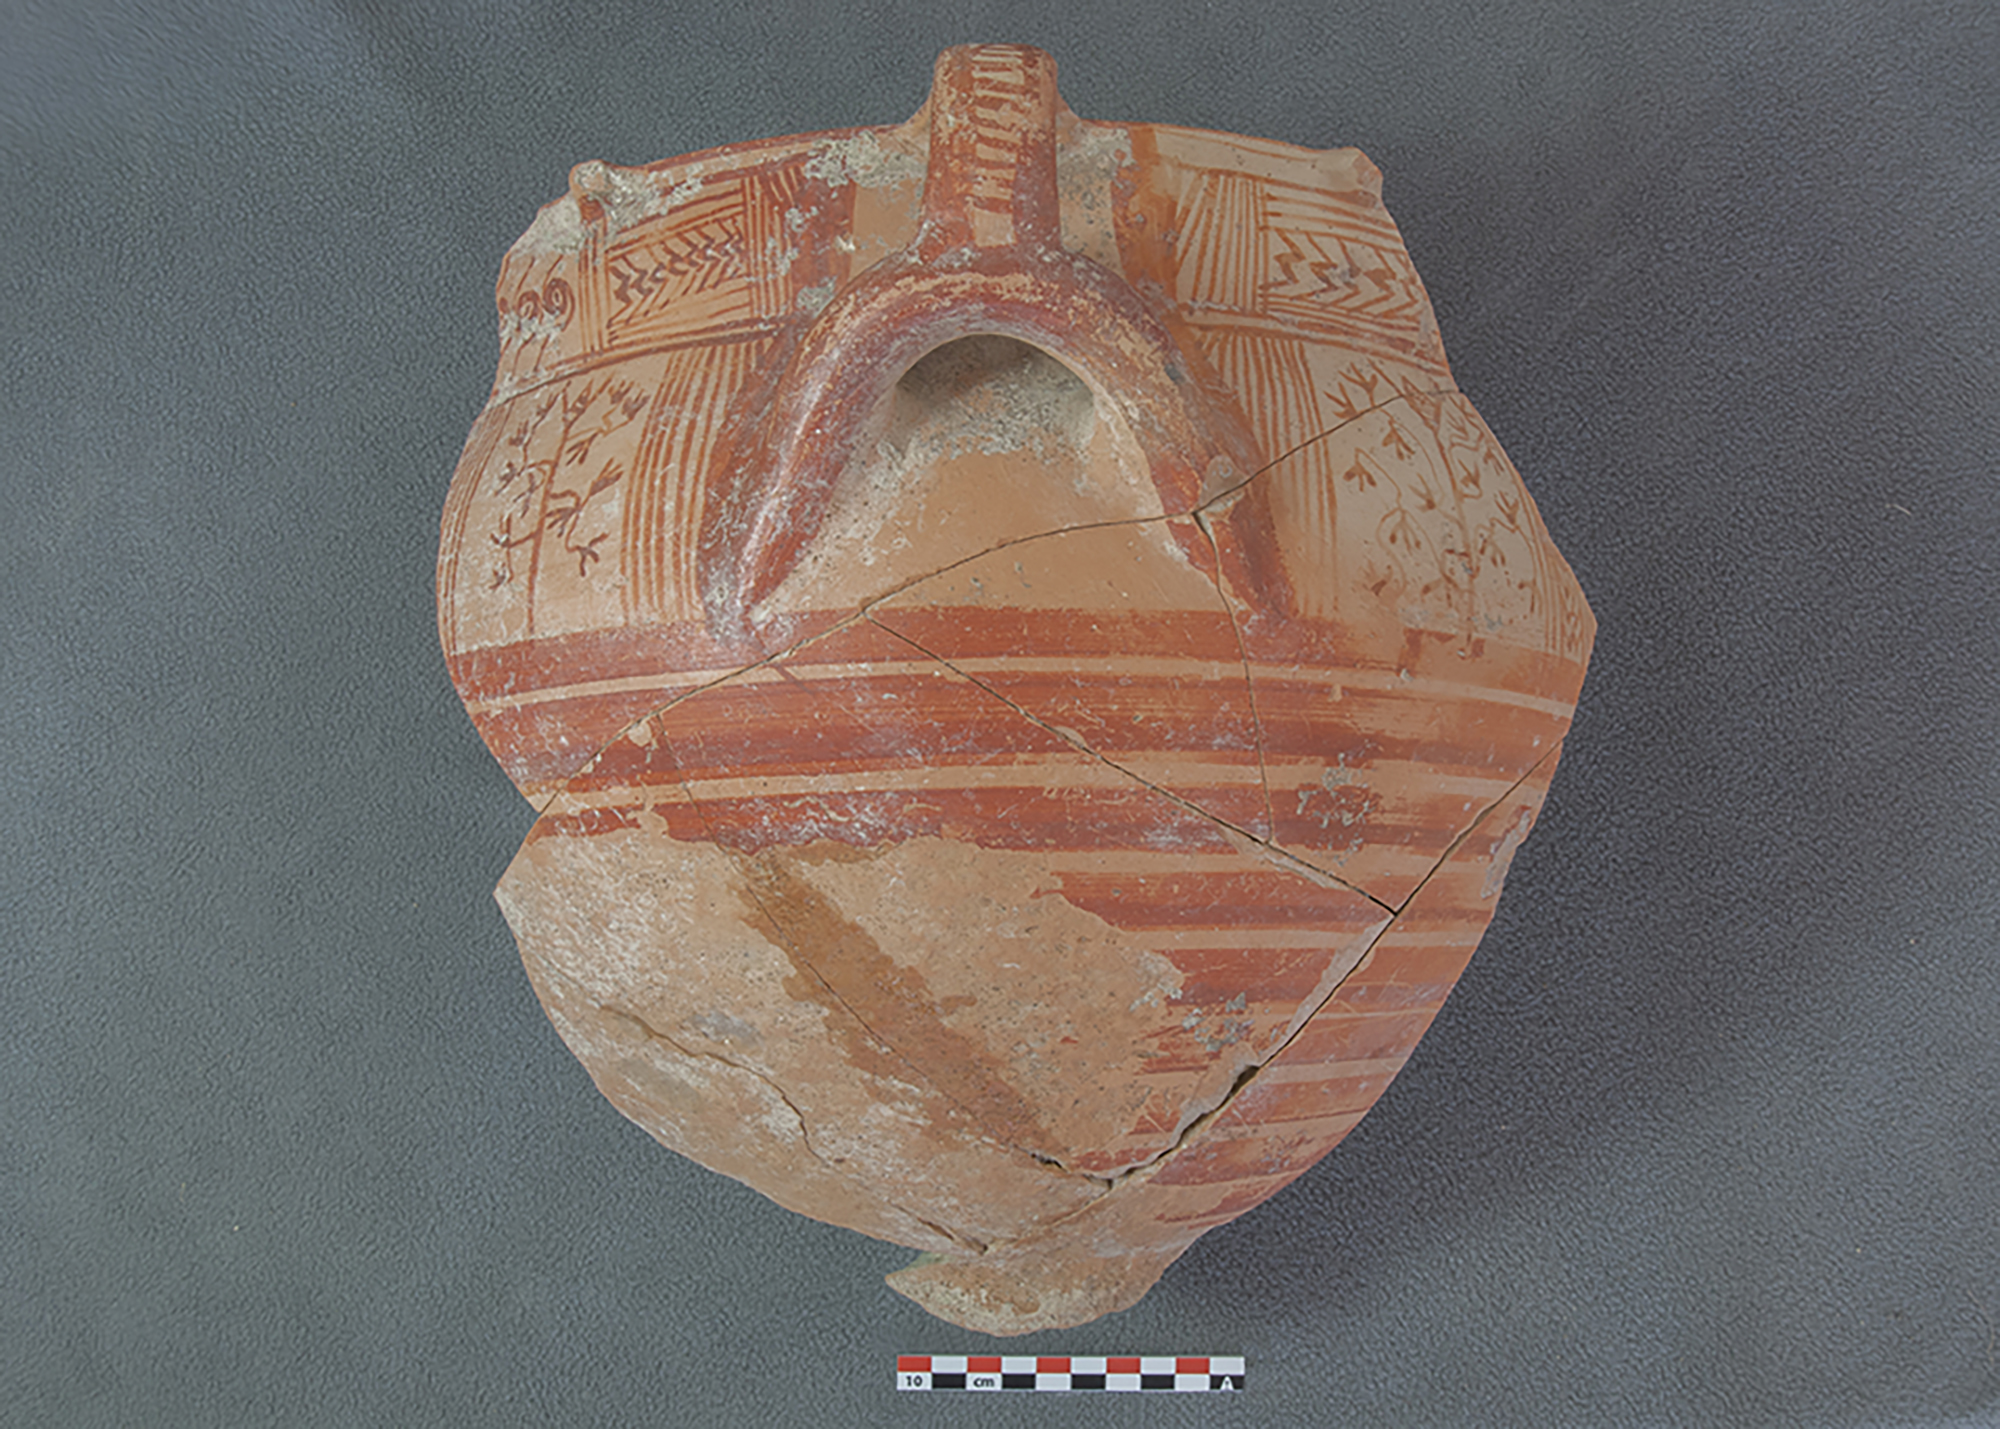 Keramikgefäss, das auf die Schafskelette gelegt war. © Institut für Archäologische Wissenschaften der Universität Bern, Projekt Sirkeli Höyük